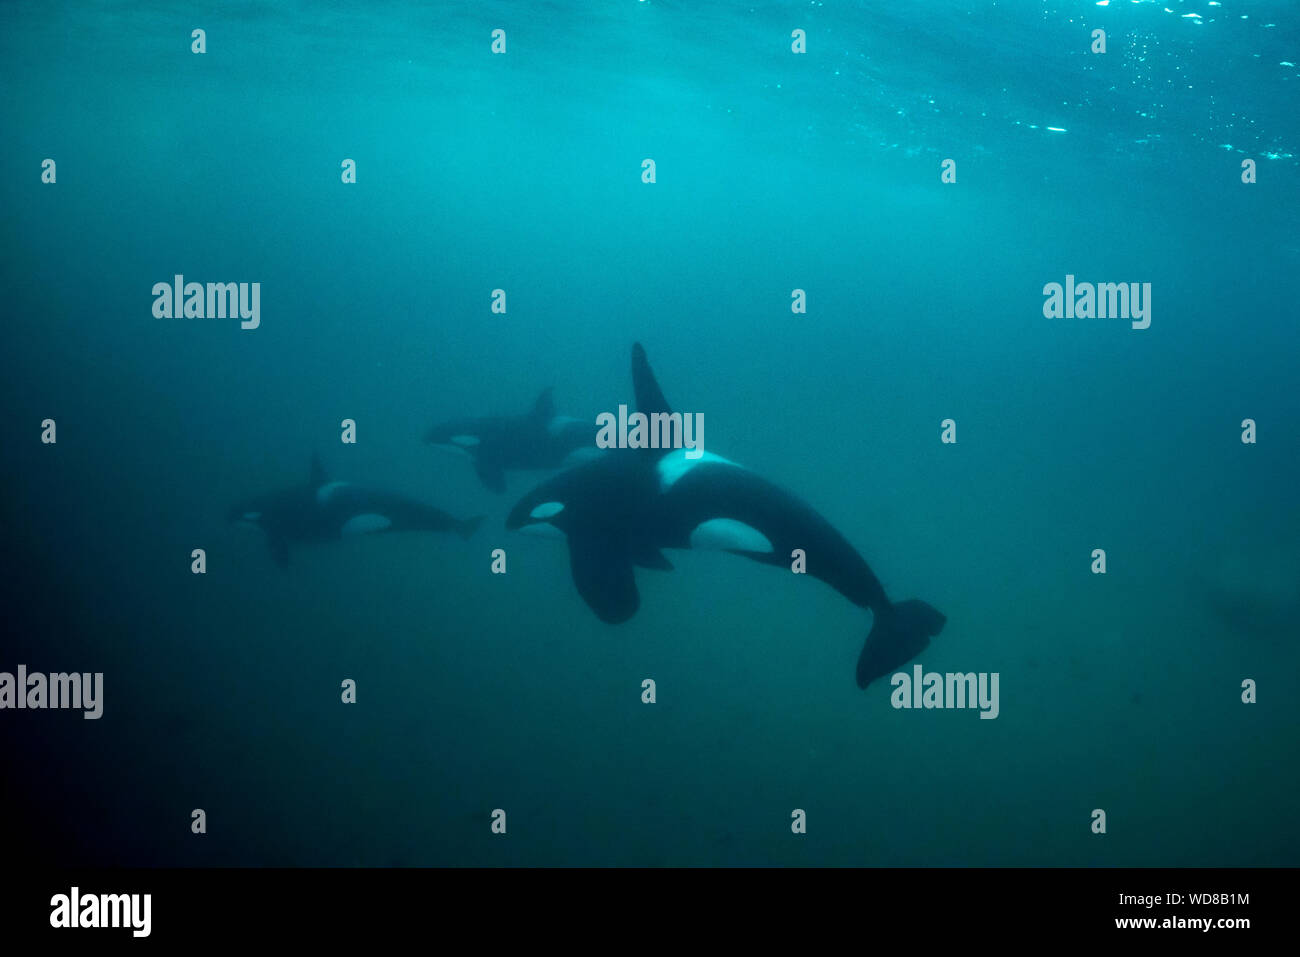 Orca underwater immagini e fotografie stock ad alta risoluzione - Alamy